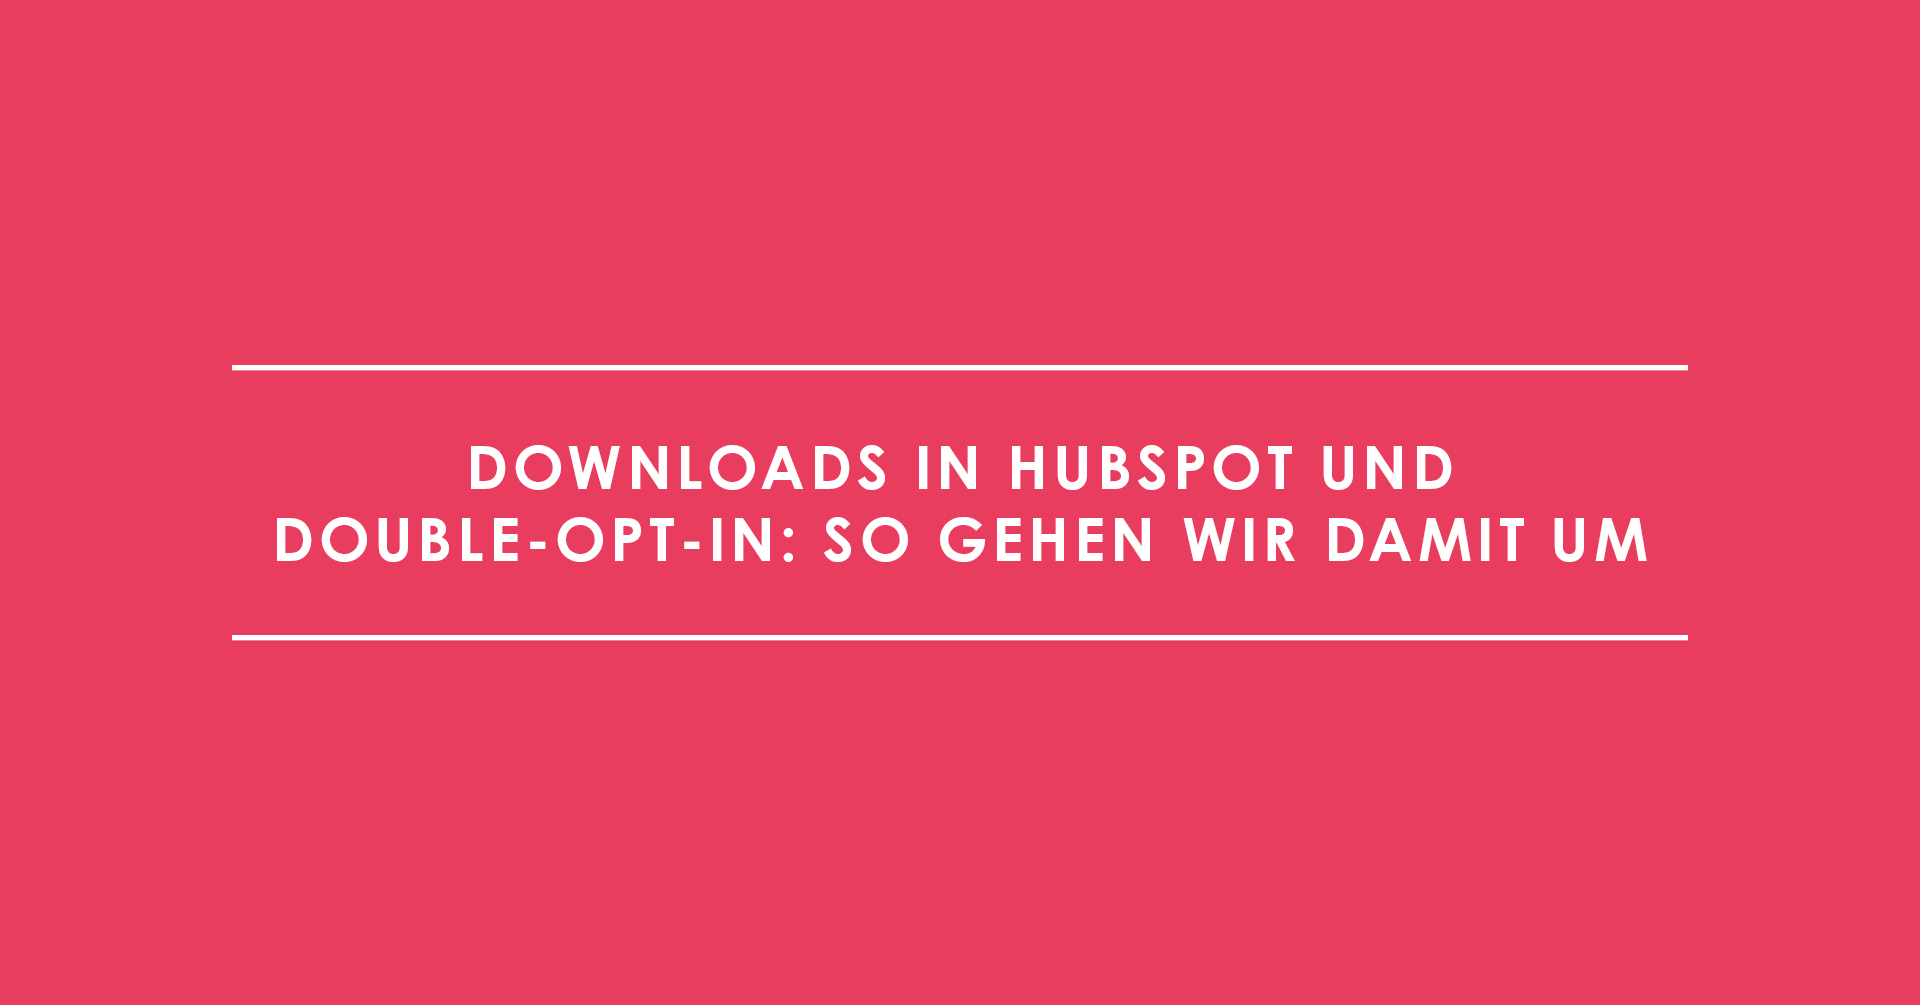 Downloads in HubSpot und Double-Opt-in: So gehen wir damit um